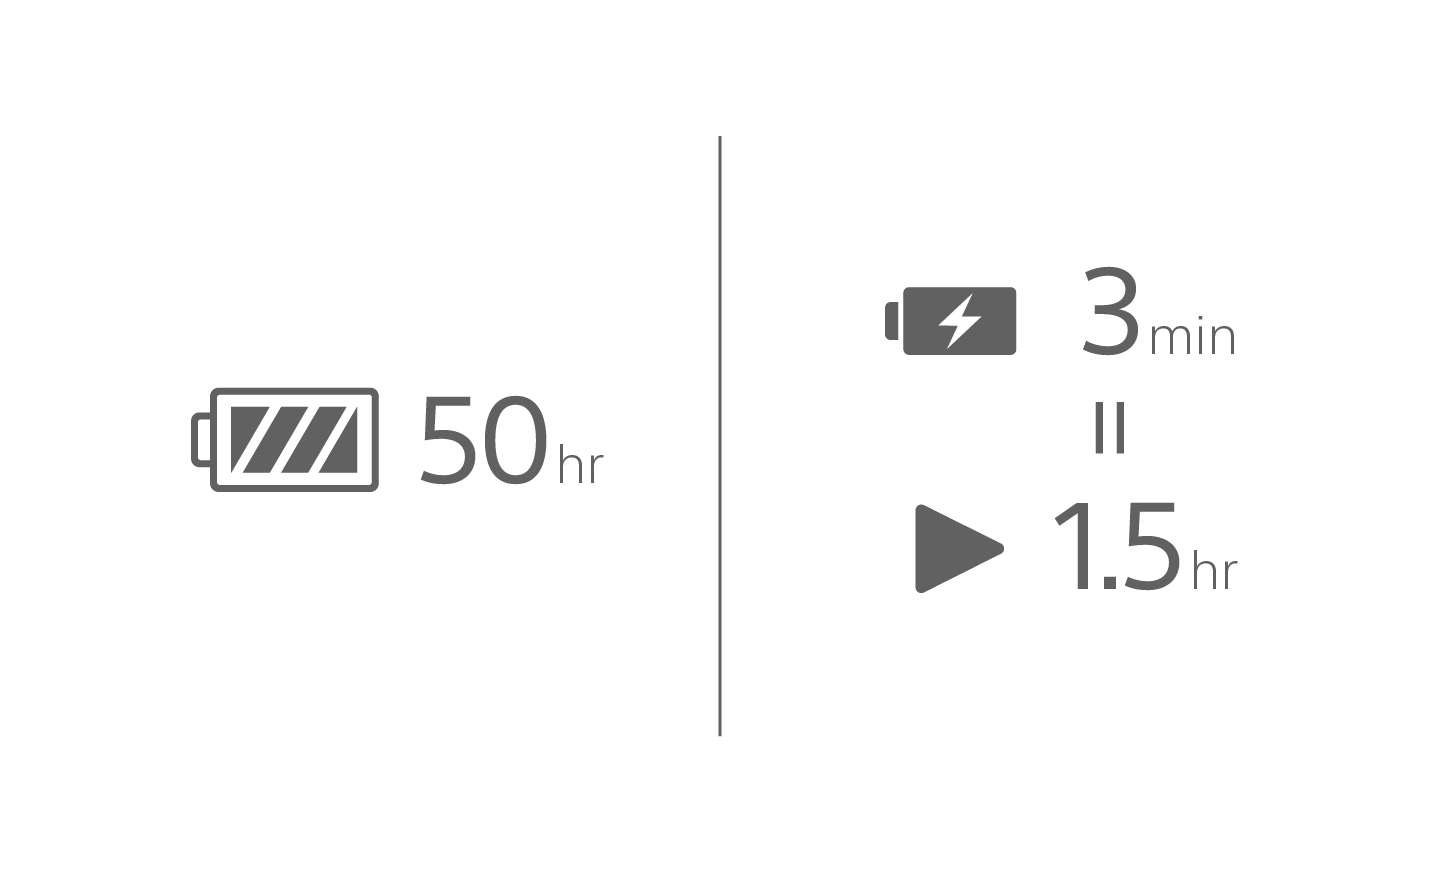 Imagem de um ícone de bateria com o texto 50 h, um ícone de carregamento de bateria com o texto 3 min acima de um ícone de reprodução com o texto 1,5 h